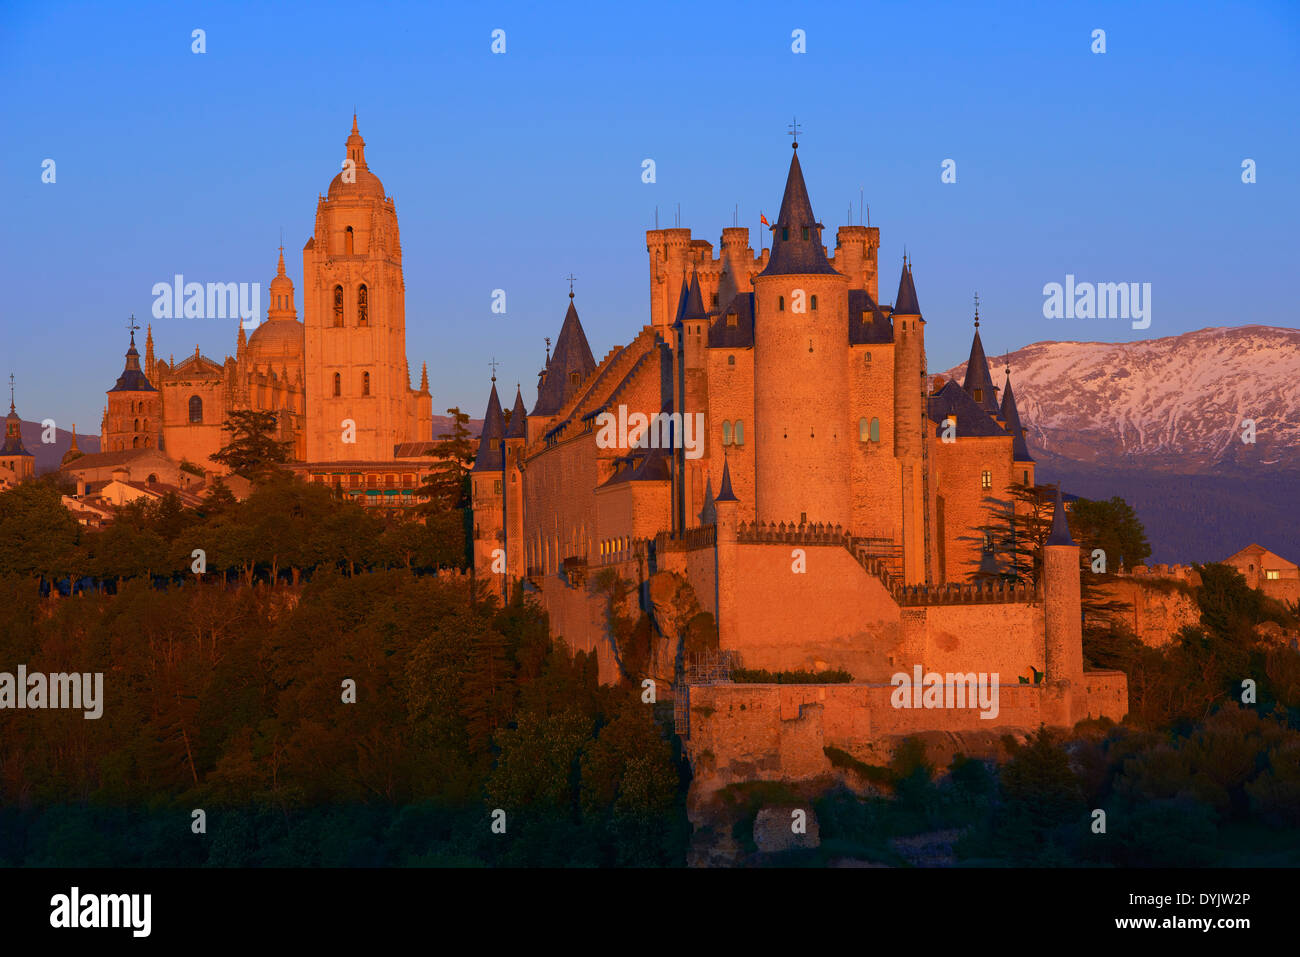 Segovia. Castilla-León, Spain. Alcazar von Segovia ist eine Burg in der spanischen Stadt Segovia in der autonomen Gemeinschaft K Stock Photo